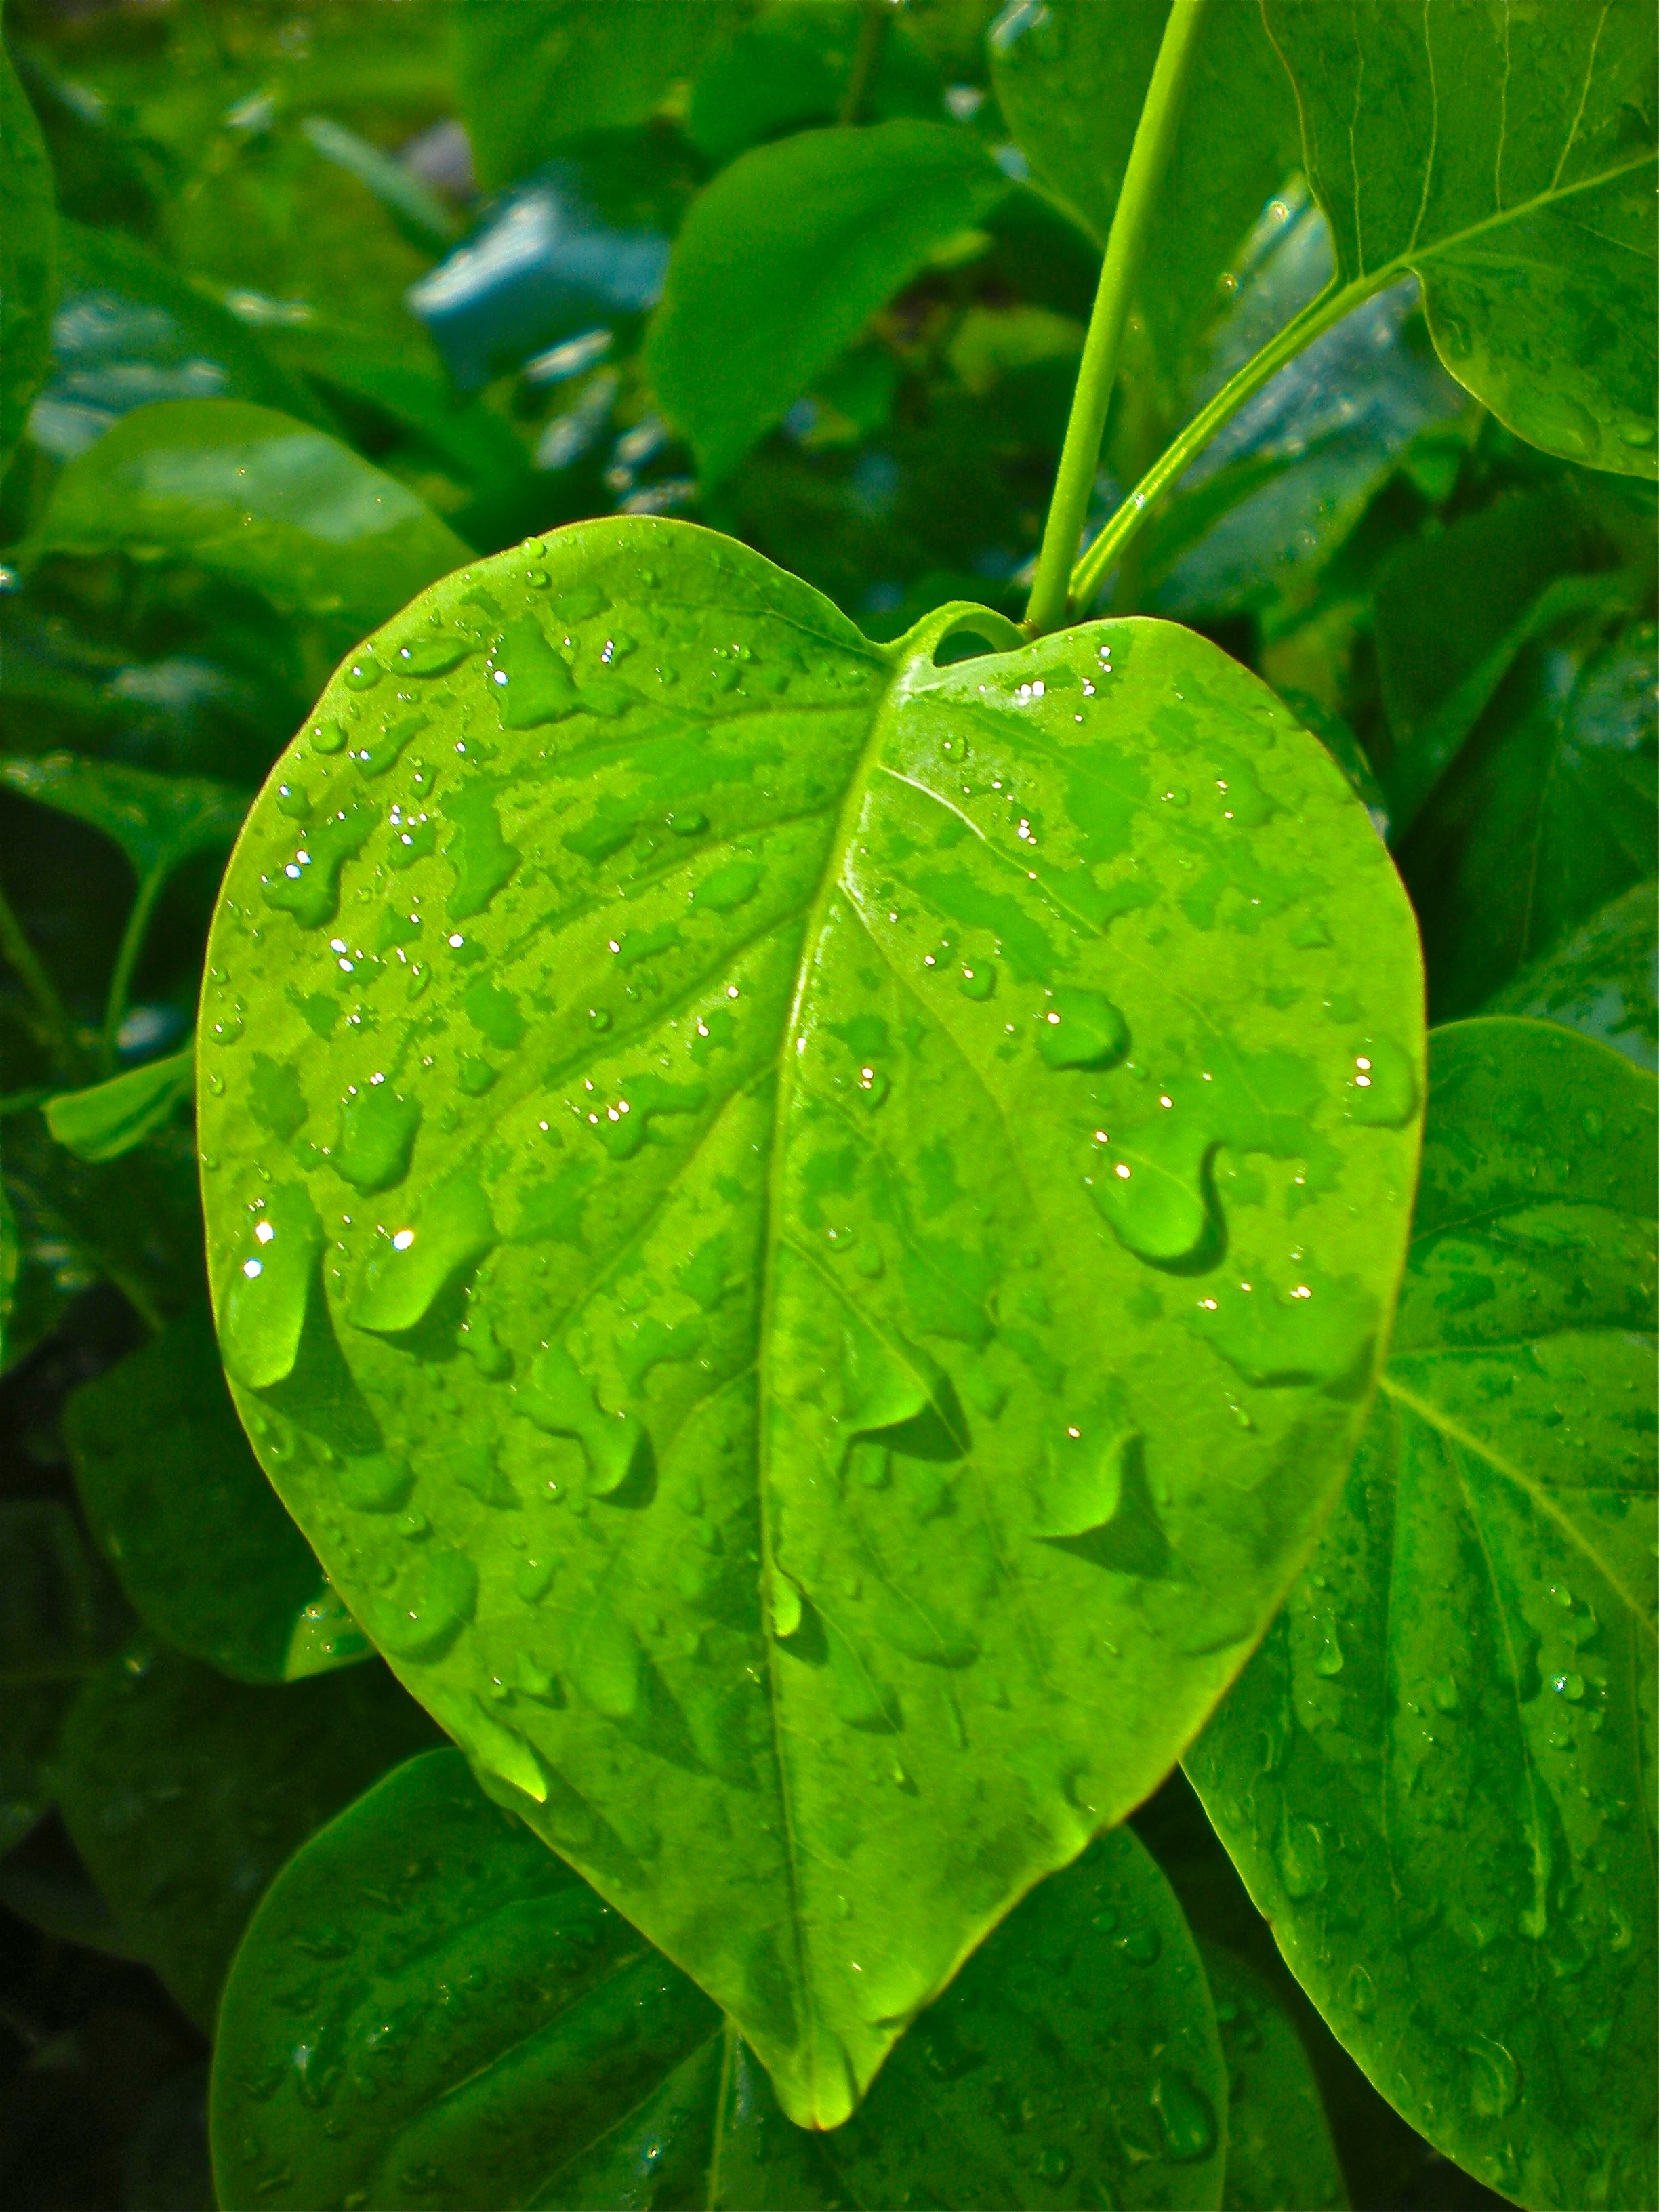 Leaf, Heart, Raindrops, Green, leaf, drop